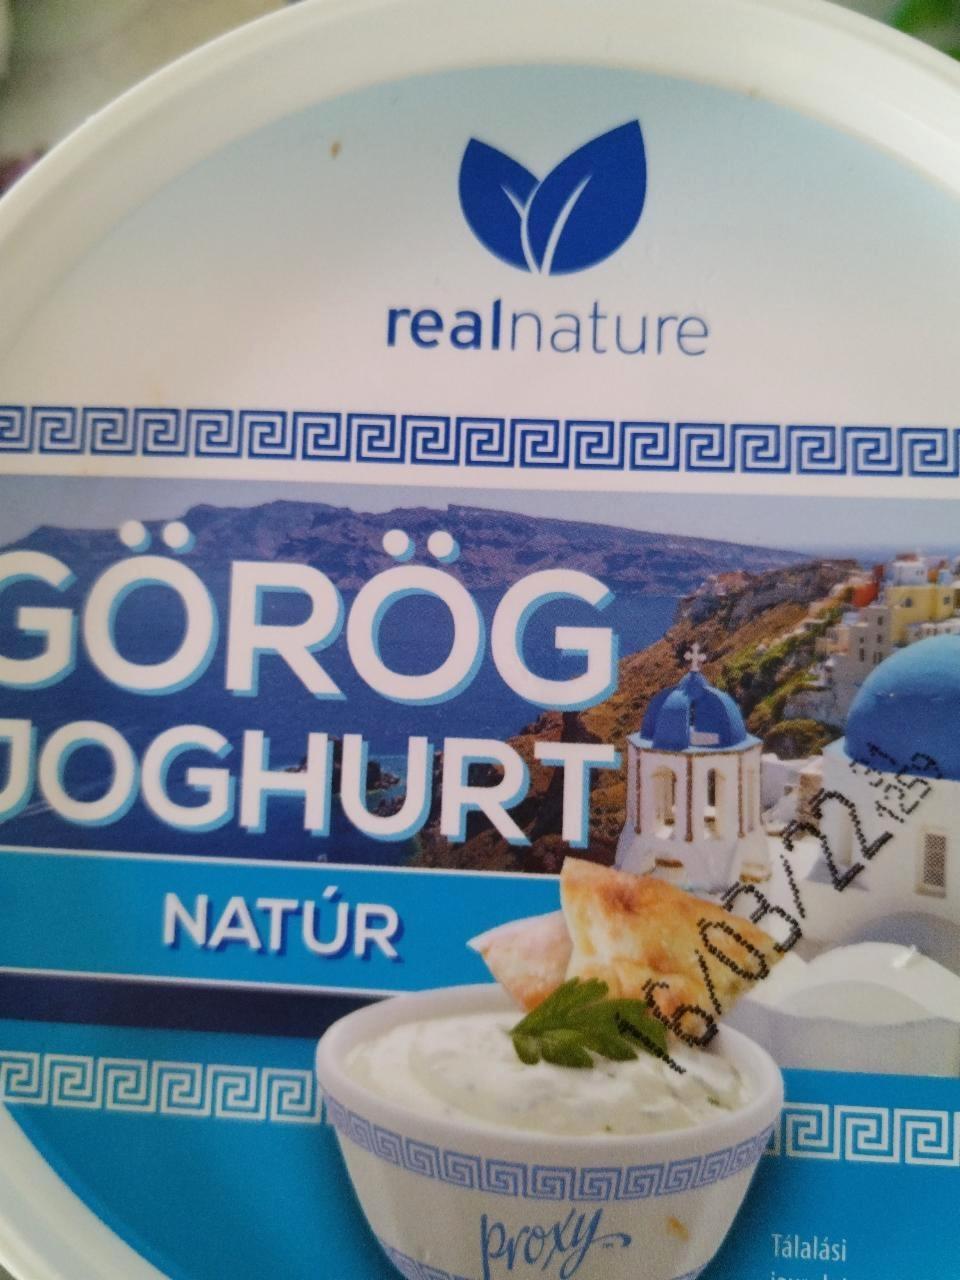 Képek - Görög joghurt natúr Real nature